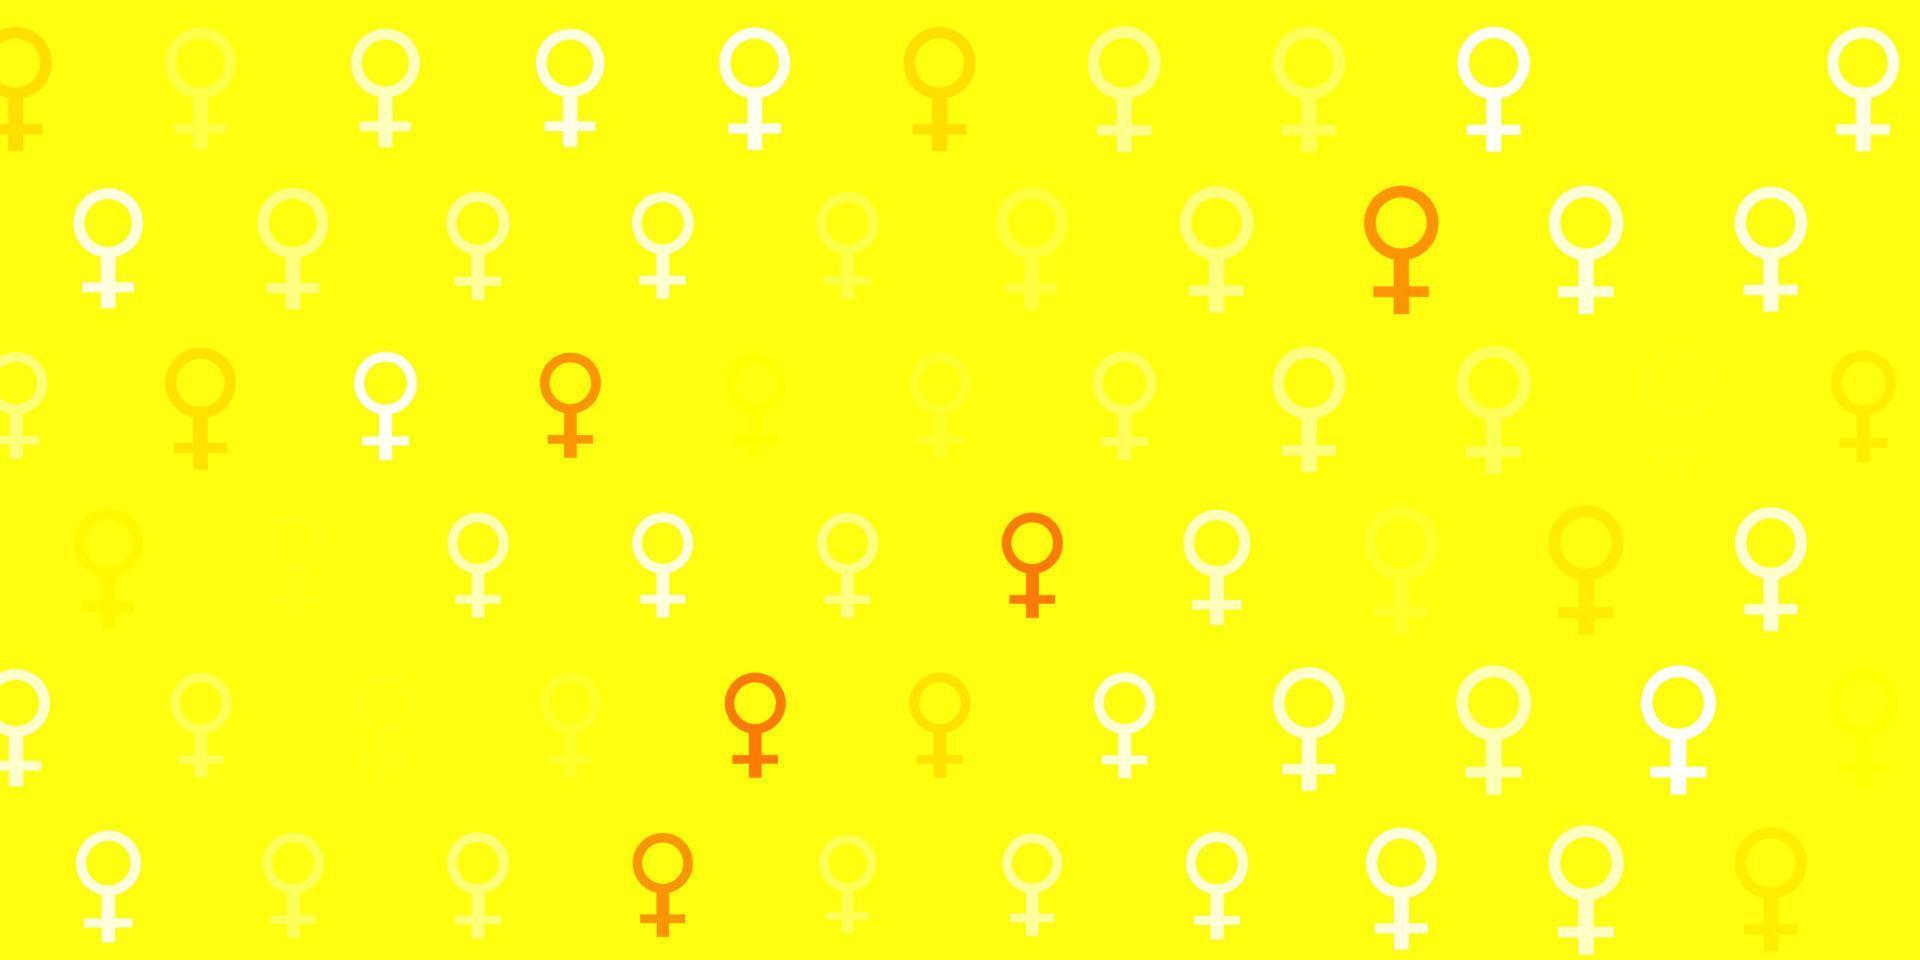 luz de fundo vector vermelho, amarelo com símbolos de poder das mulheres.